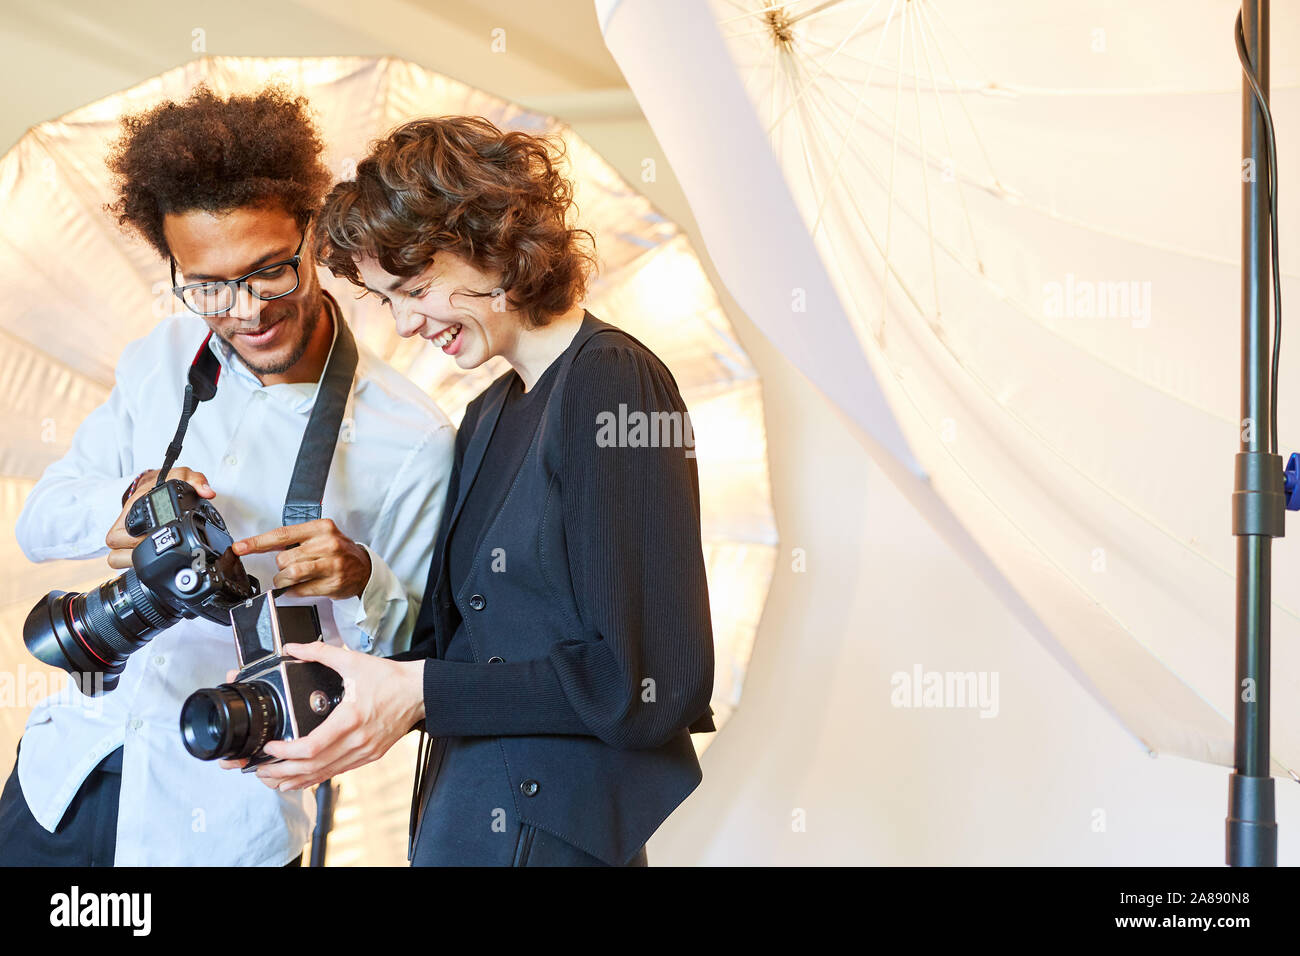 Dos fotógrafos o fotógrafos comparar sus modelos de cámara Fotografía de  stock - Alamy